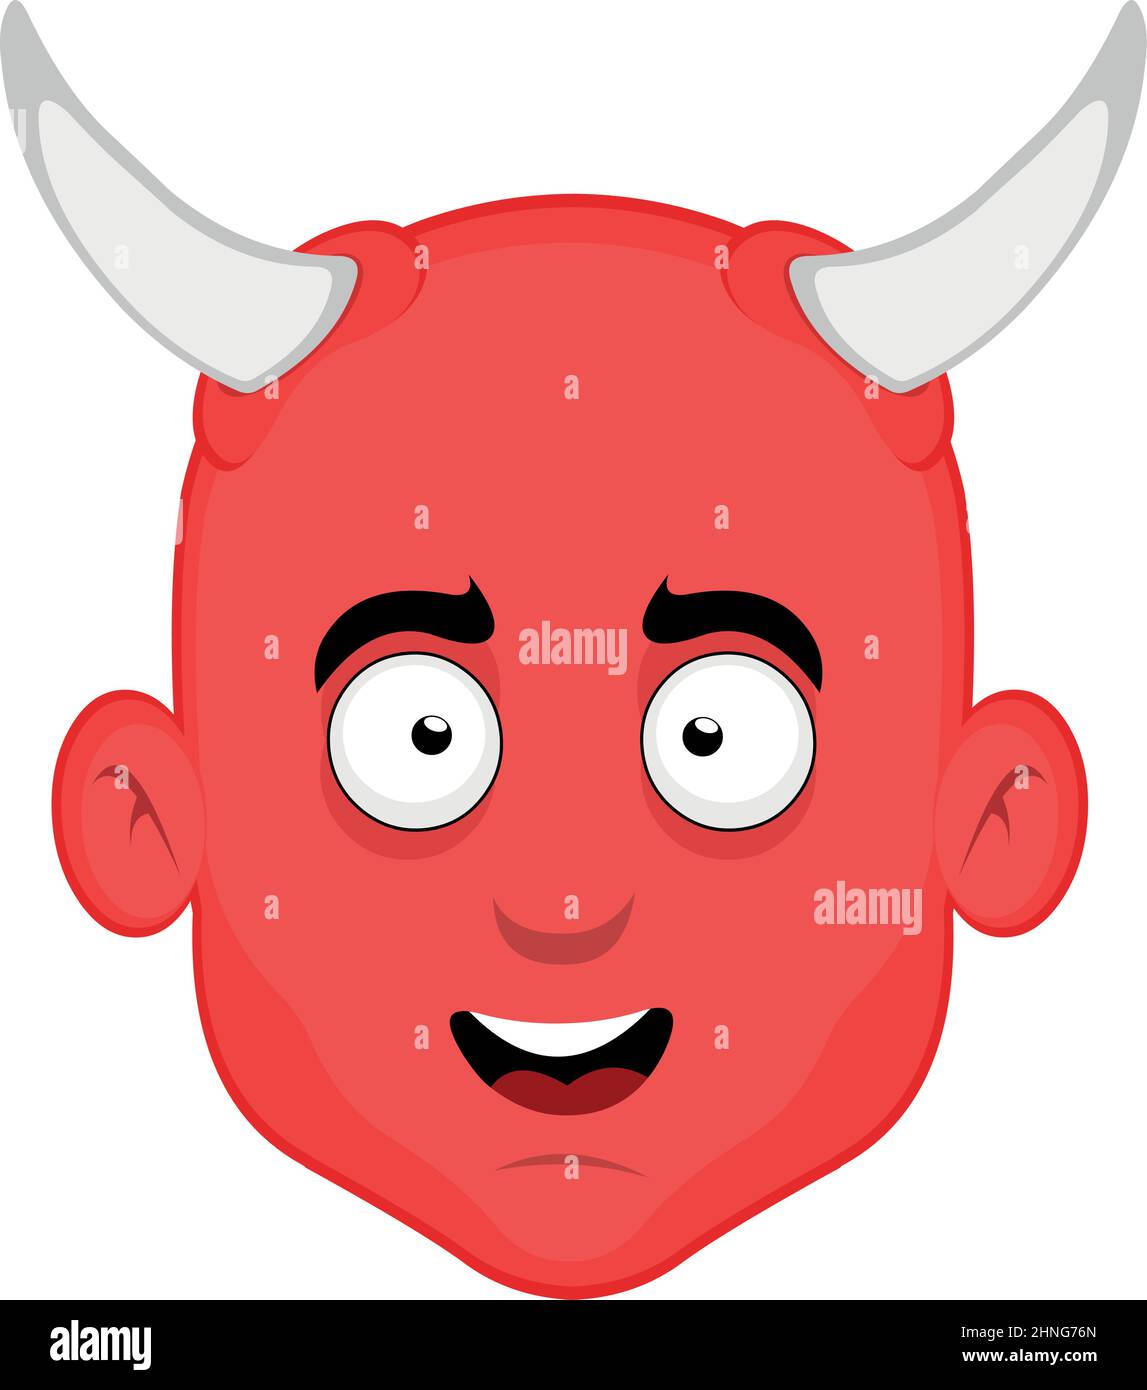 Illustration vectorielle du visage d'un diable de bande dessinée avec une expression heureuse Illustration de Vecteur